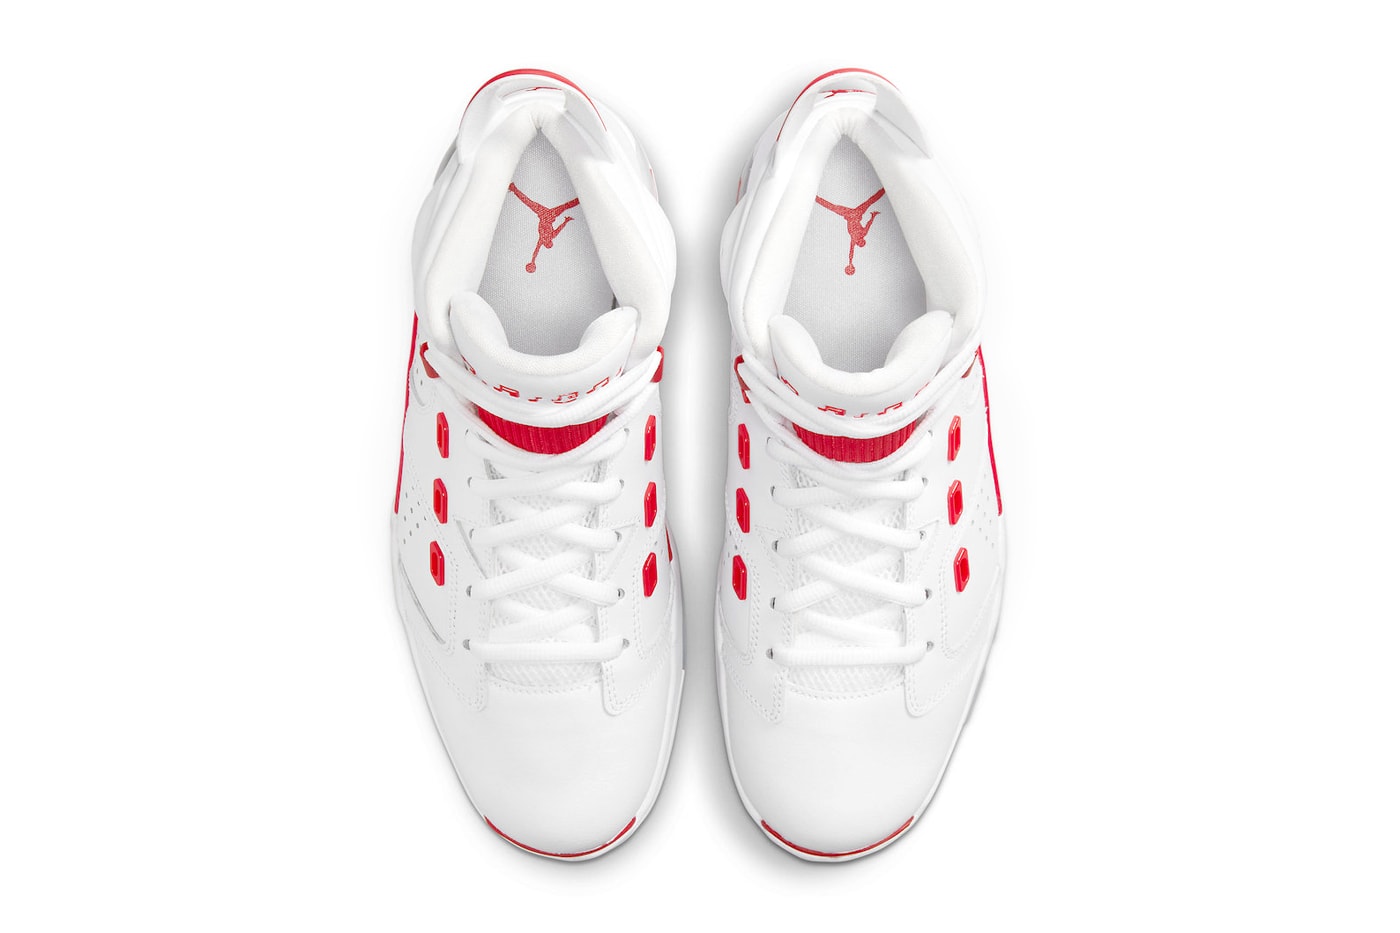 Air Jordan 6-17-23 in "White/Red" Release Date footwear sneaker Jordan Brand leather mesh white red grey icy blue